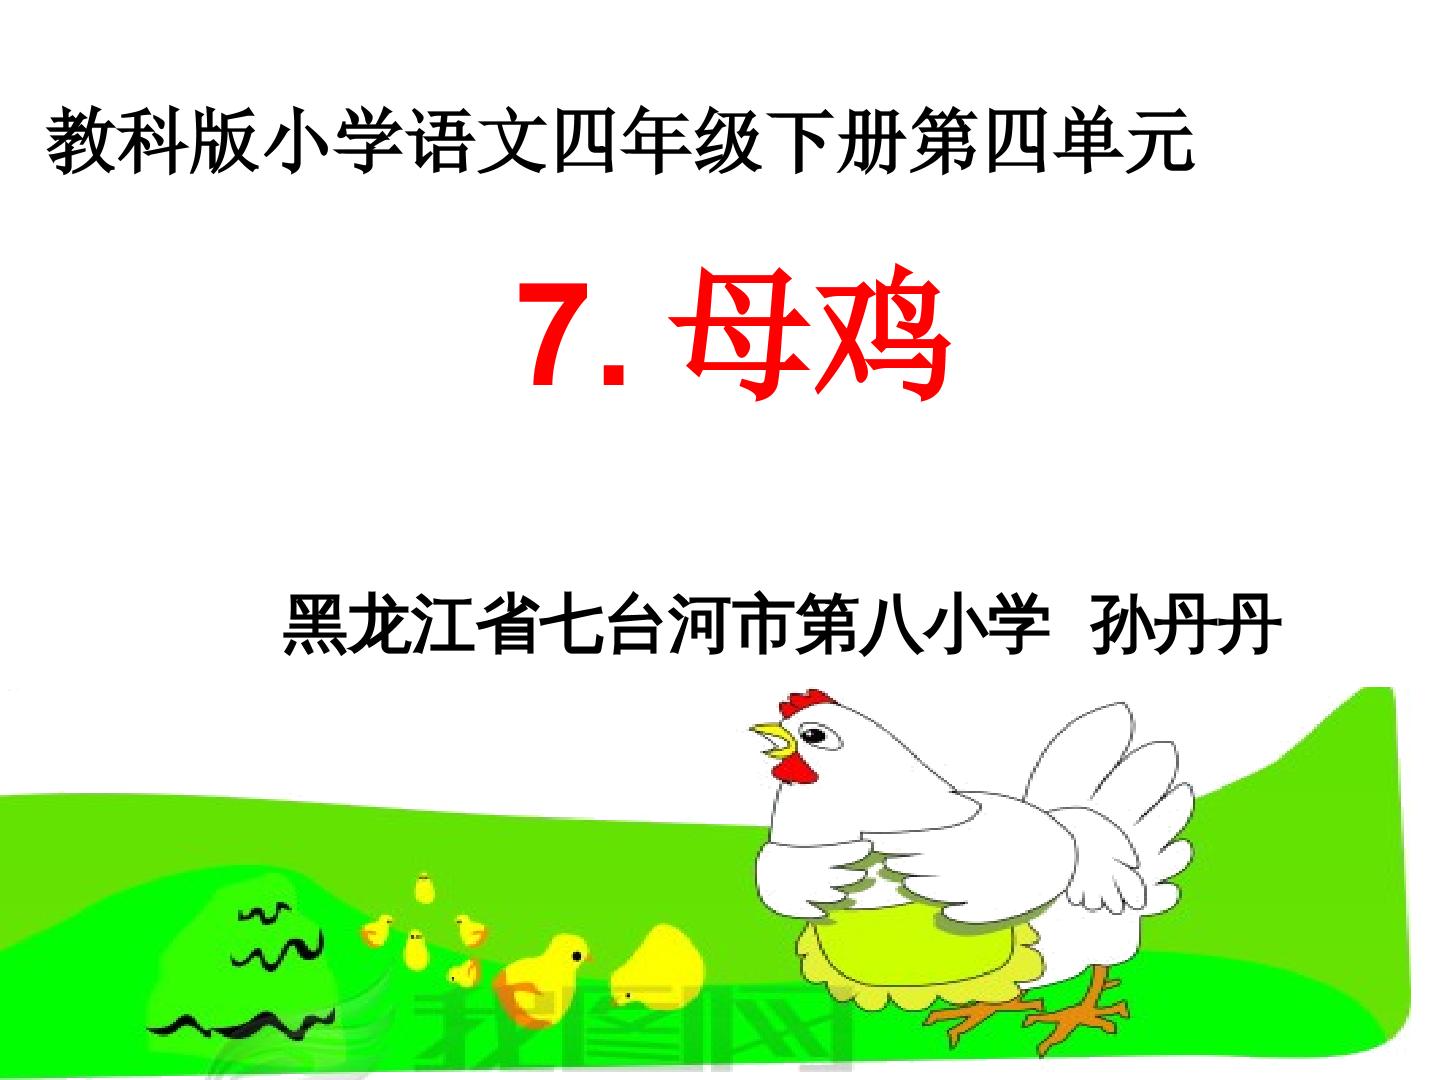 7 母鸡